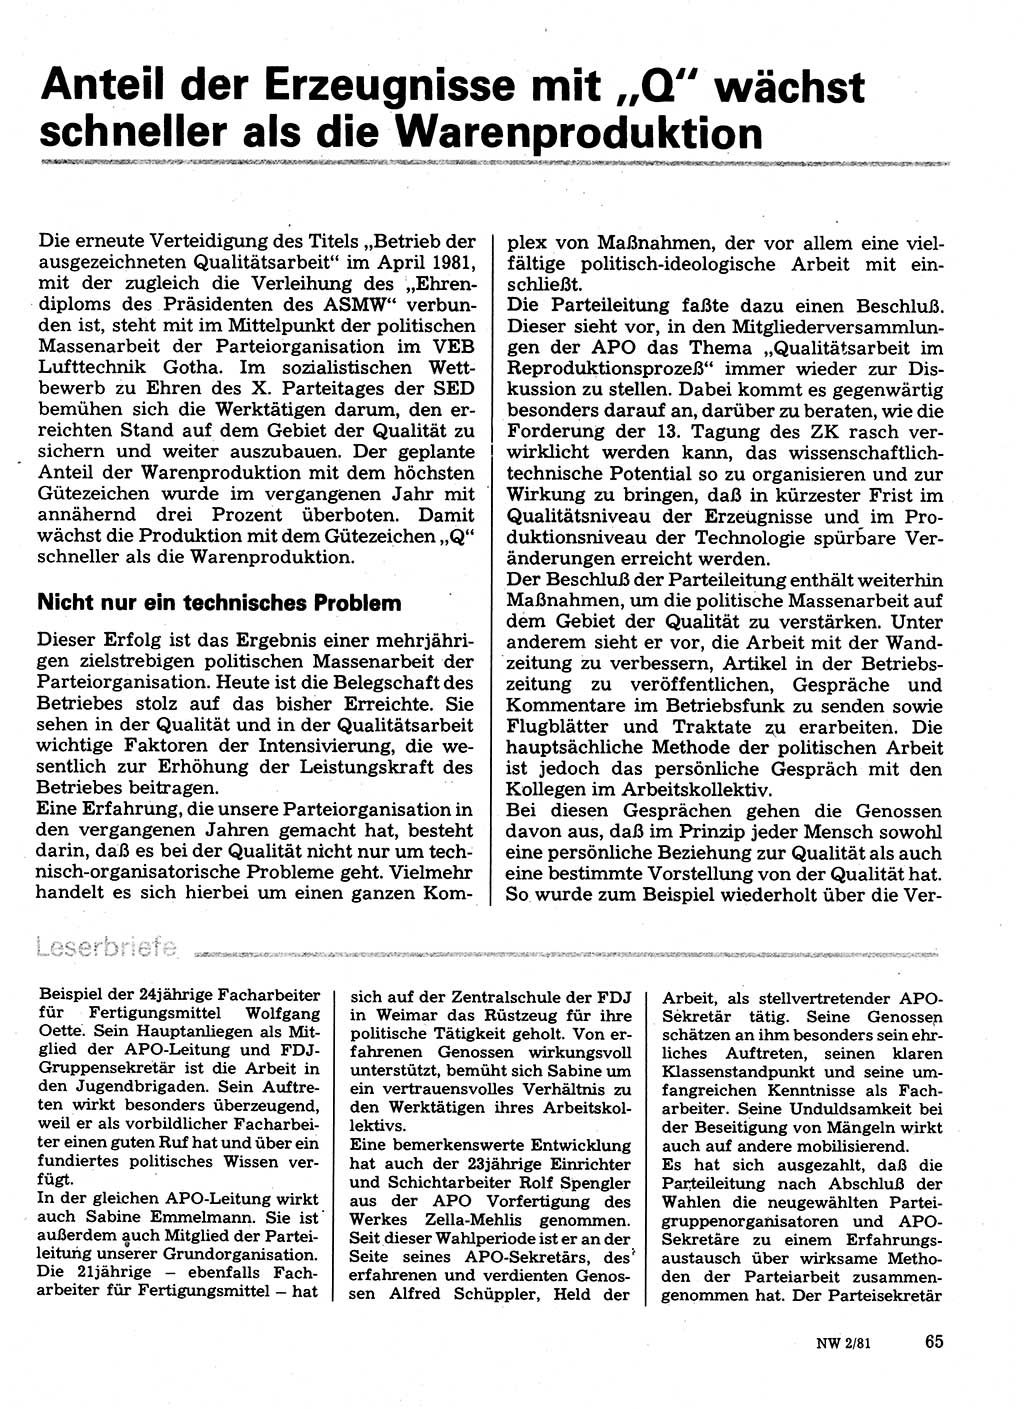 Neuer Weg (NW), Organ des Zentralkomitees (ZK) der SED (Sozialistische Einheitspartei Deutschlands) für Fragen des Parteilebens, 36. Jahrgang [Deutsche Demokratische Republik (DDR)] 1981, Seite 65 (NW ZK SED DDR 1981, S. 65)